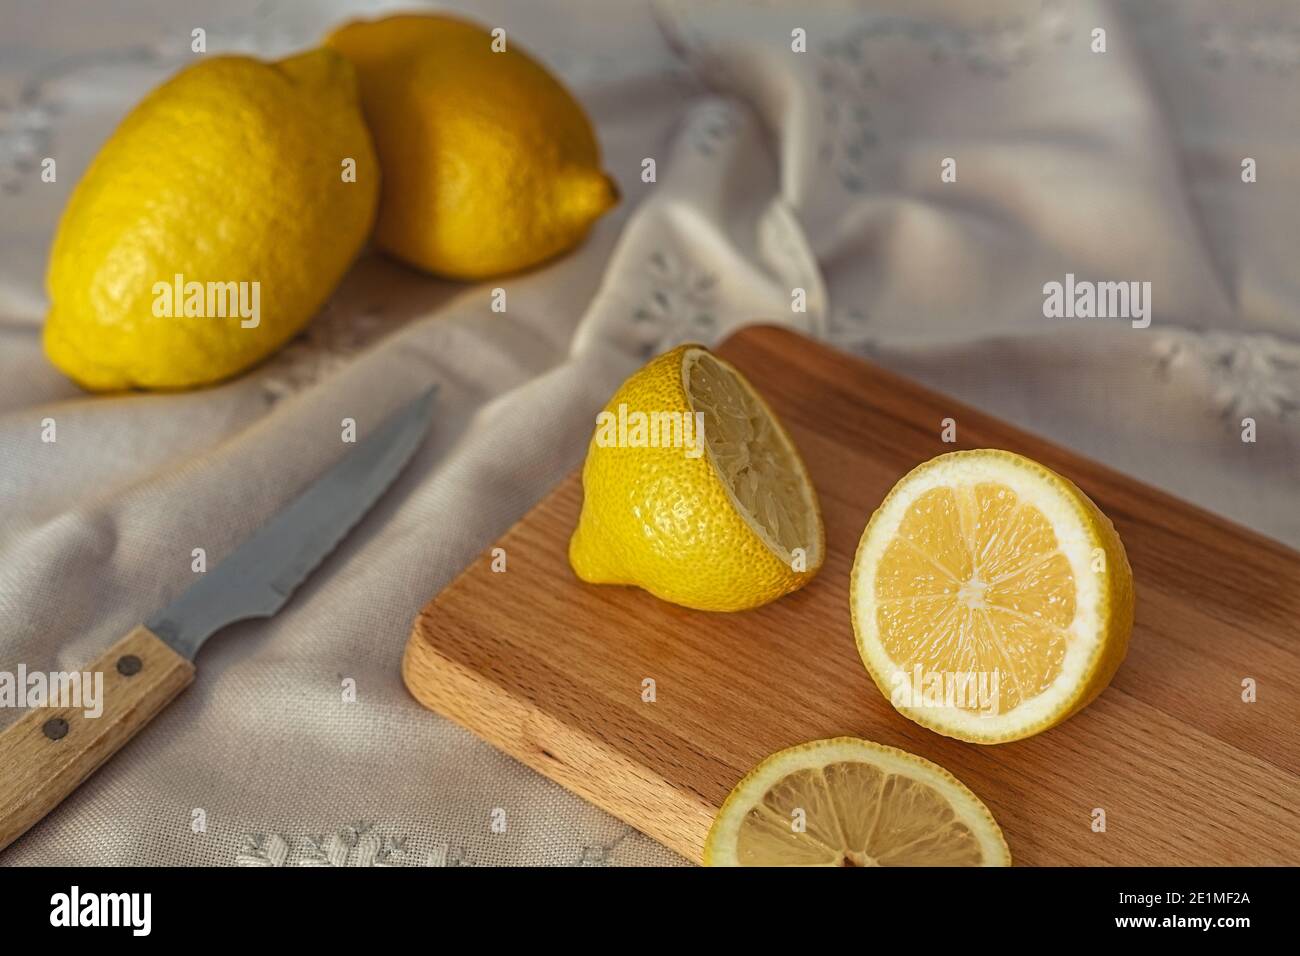 Un gros plan de citrons coupés sur une planche de bois la table est recouverte d'une nappe Banque D'Images